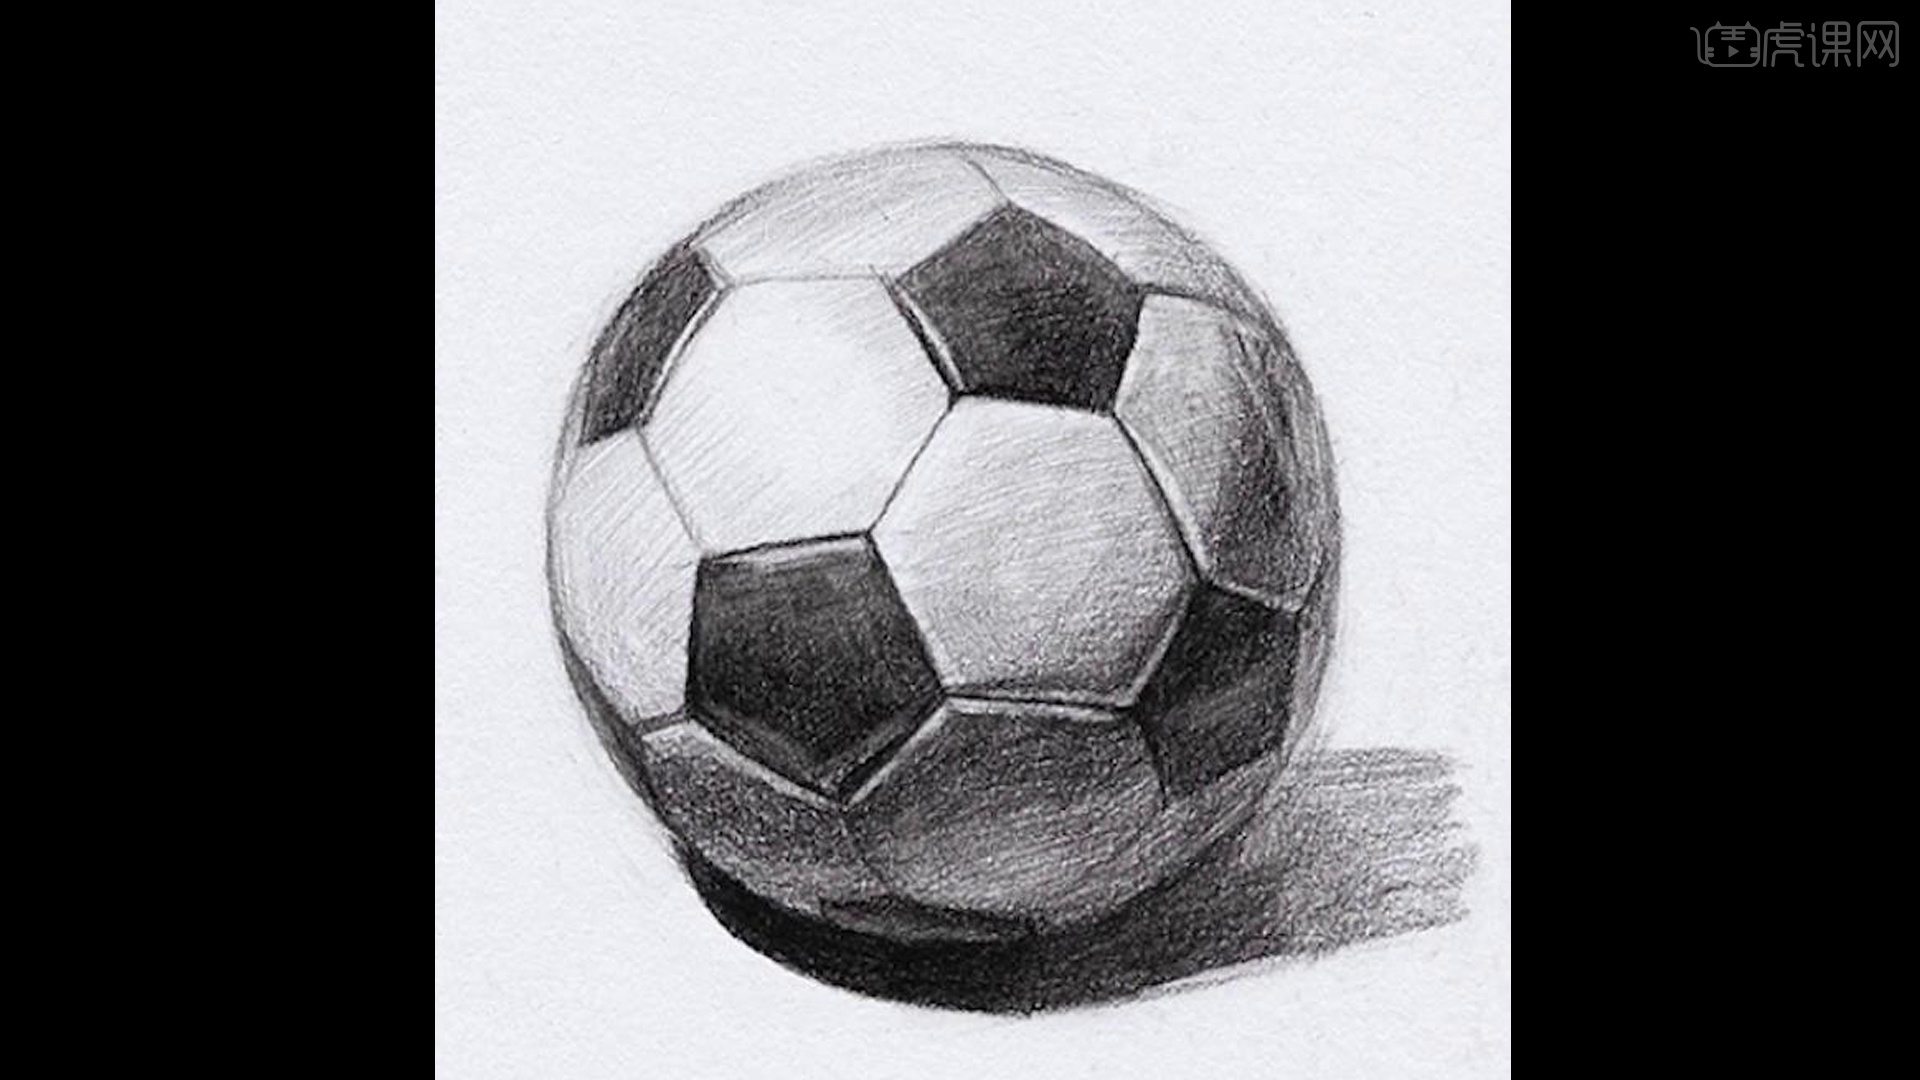 足球主题绘画 铅笔画图片